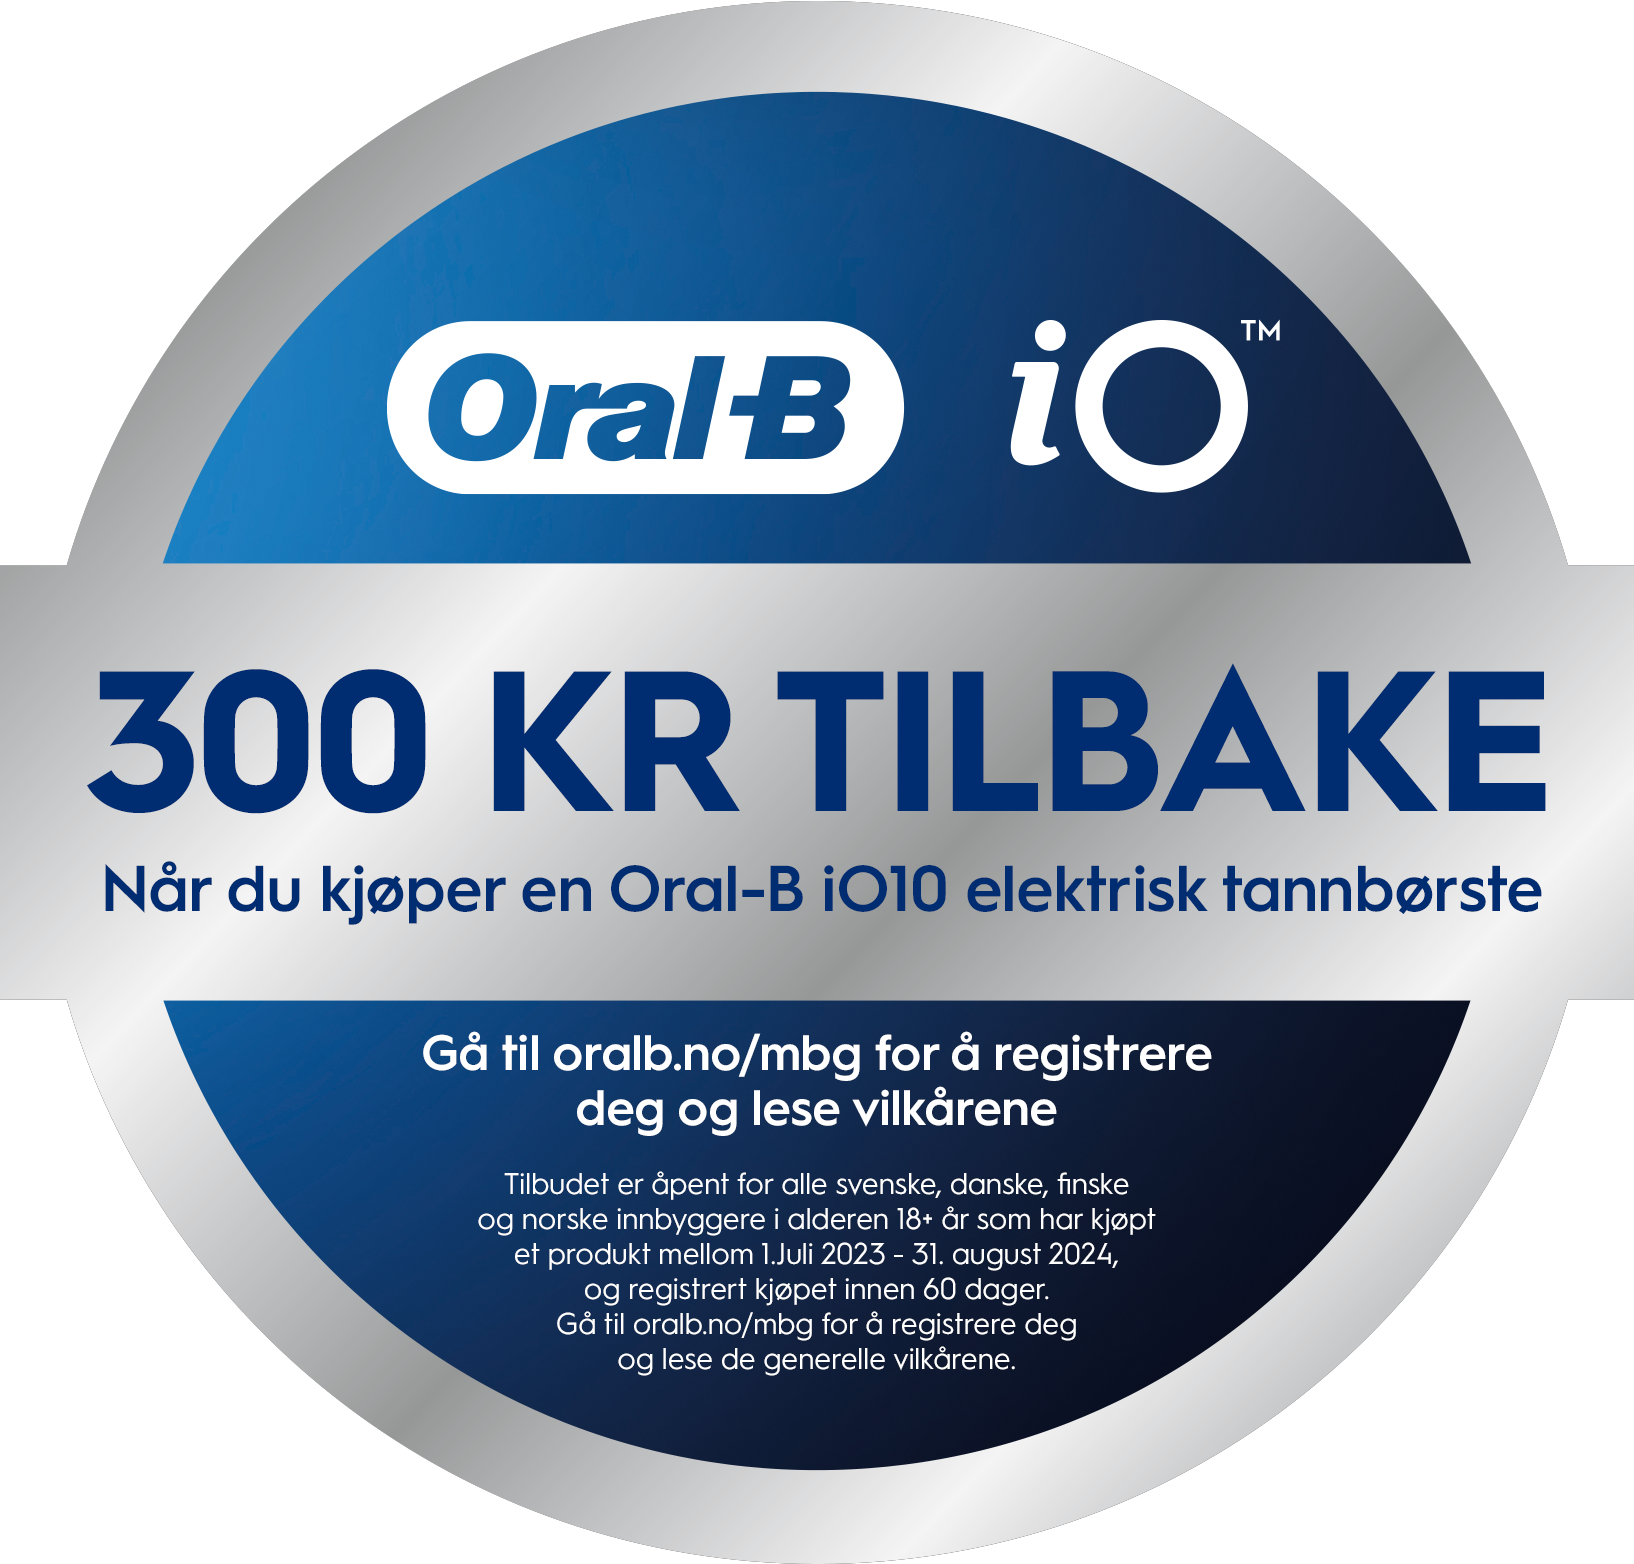 *Nå får du cashback på 300 kroner ved kjøp av Oral-B elektriske tannbørster av typen iO10. Registrer deg og les mer om kampanjen på www.oralb.no/mbg som også er i linken under.